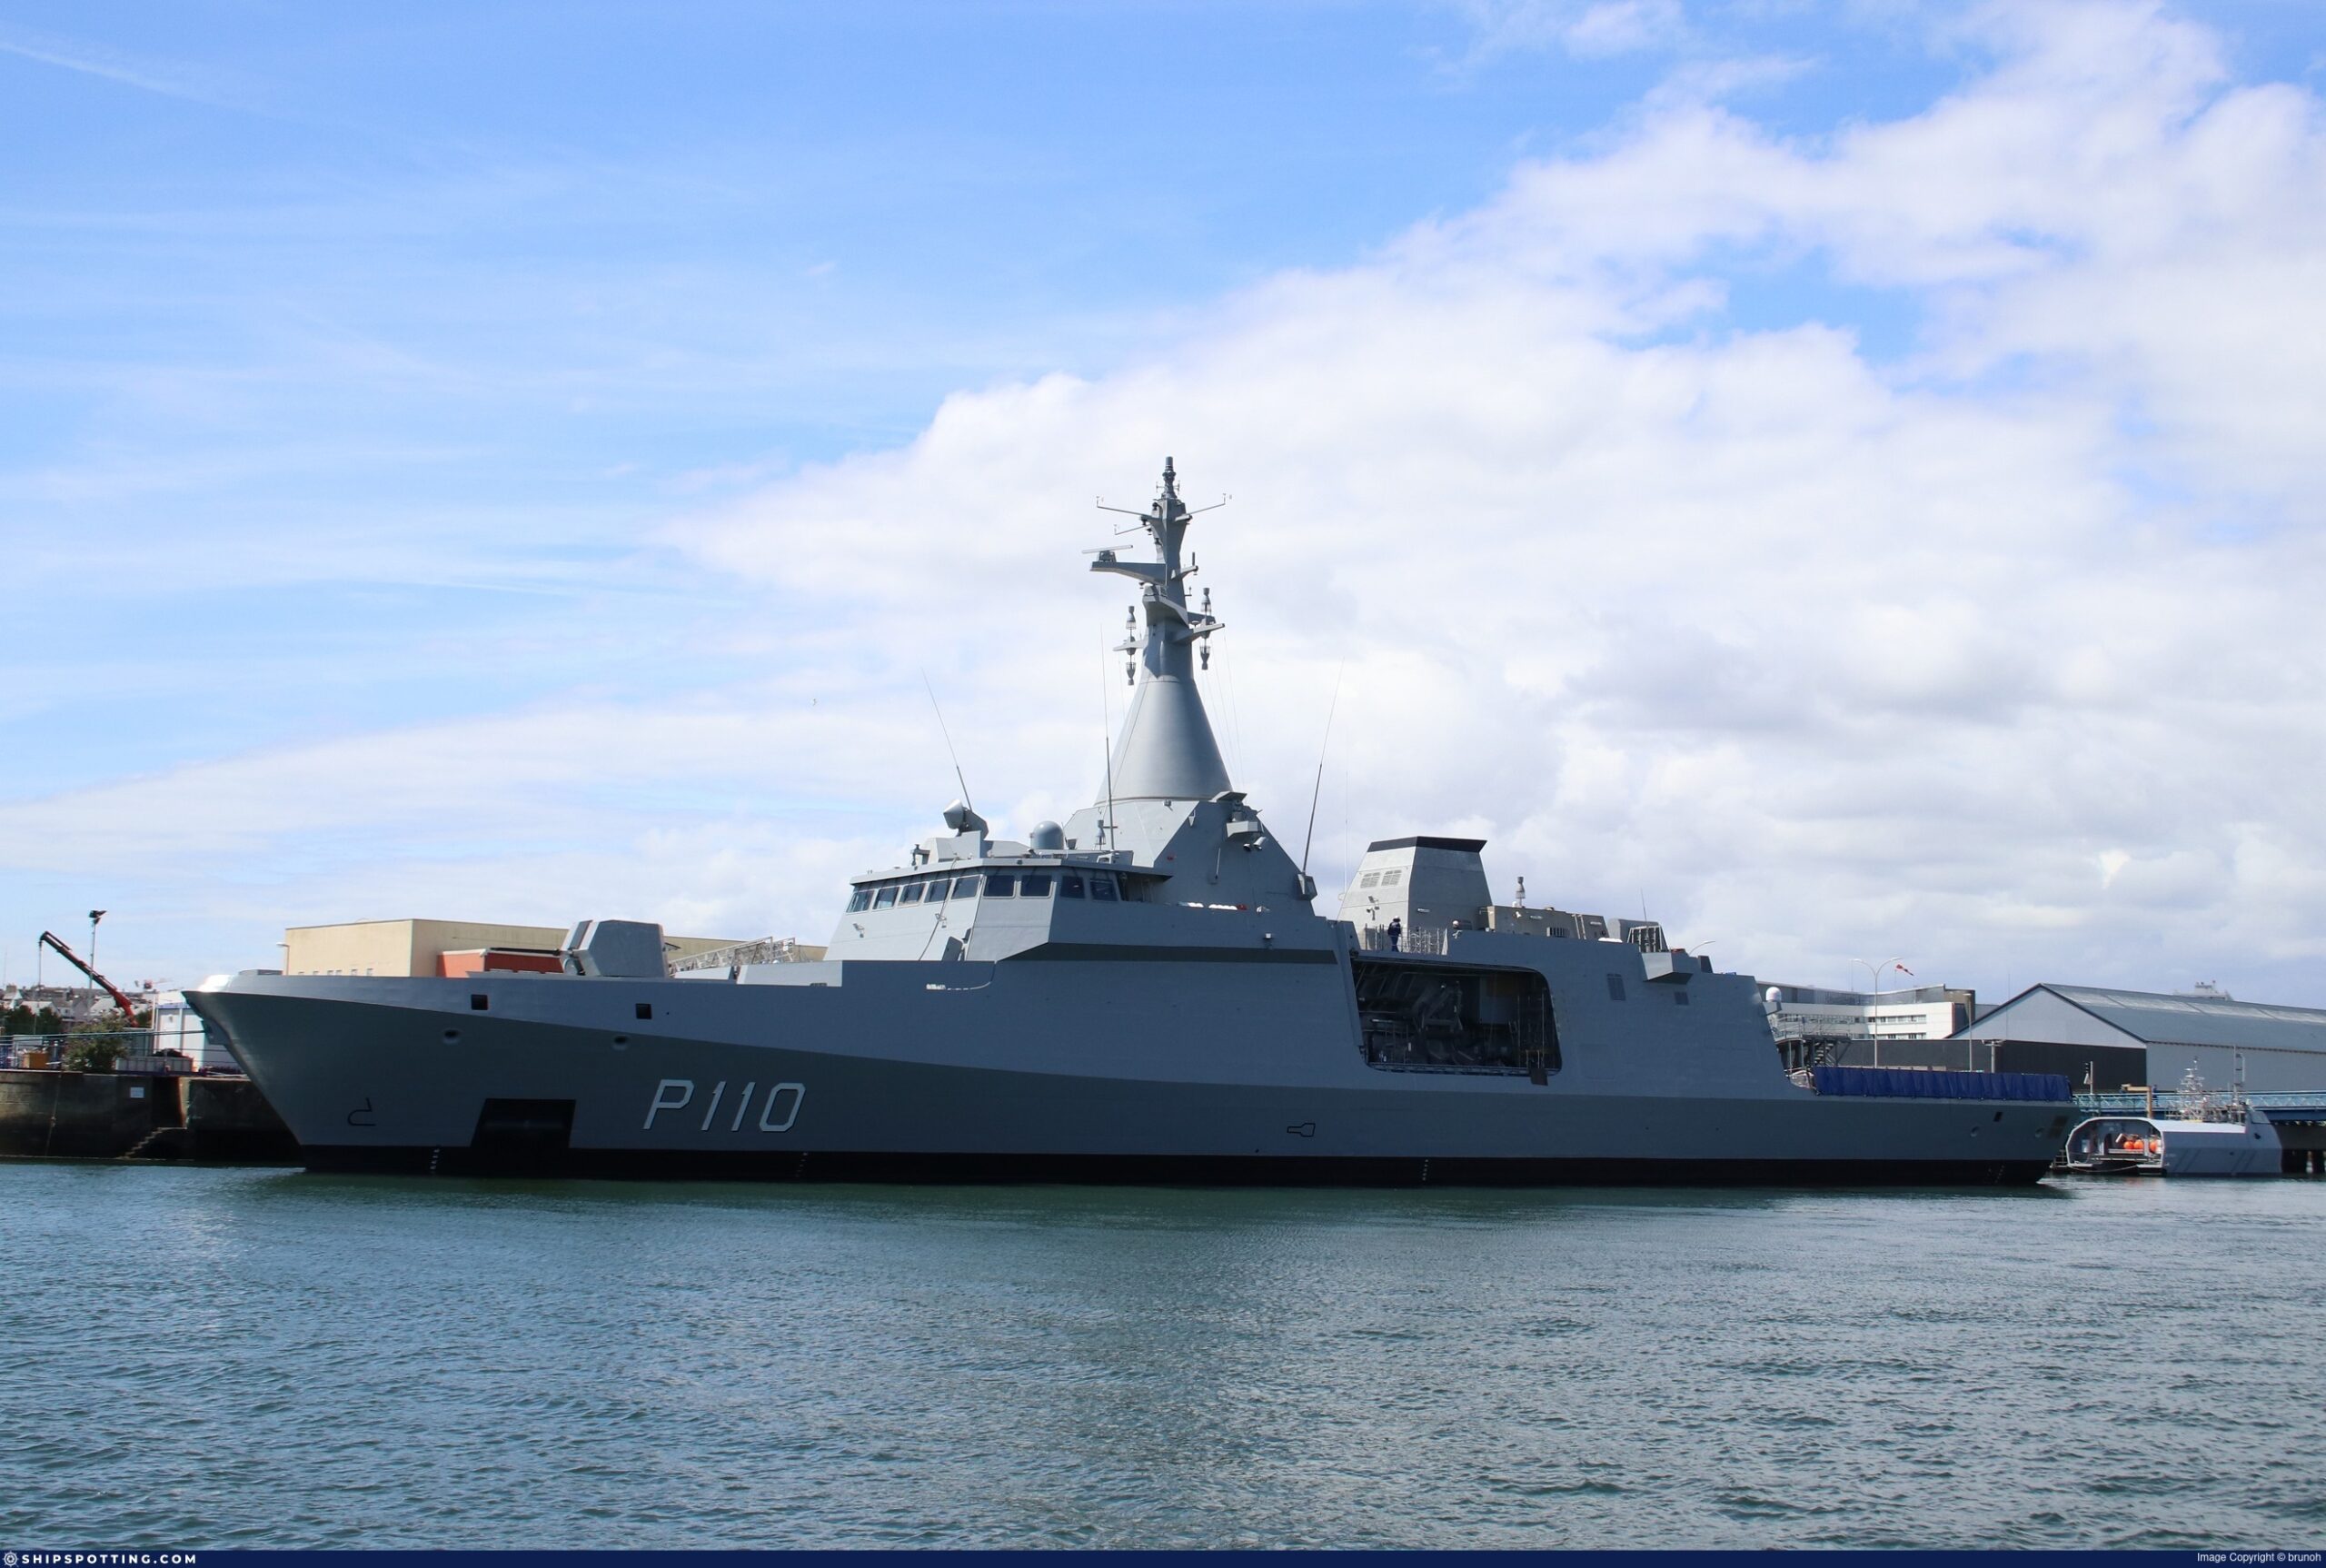 Εντάχθηκε σε υπηρεσία με το Ναυτικό των ΗΑΕ η κορβέτα Gowind Bani Yas (P110)